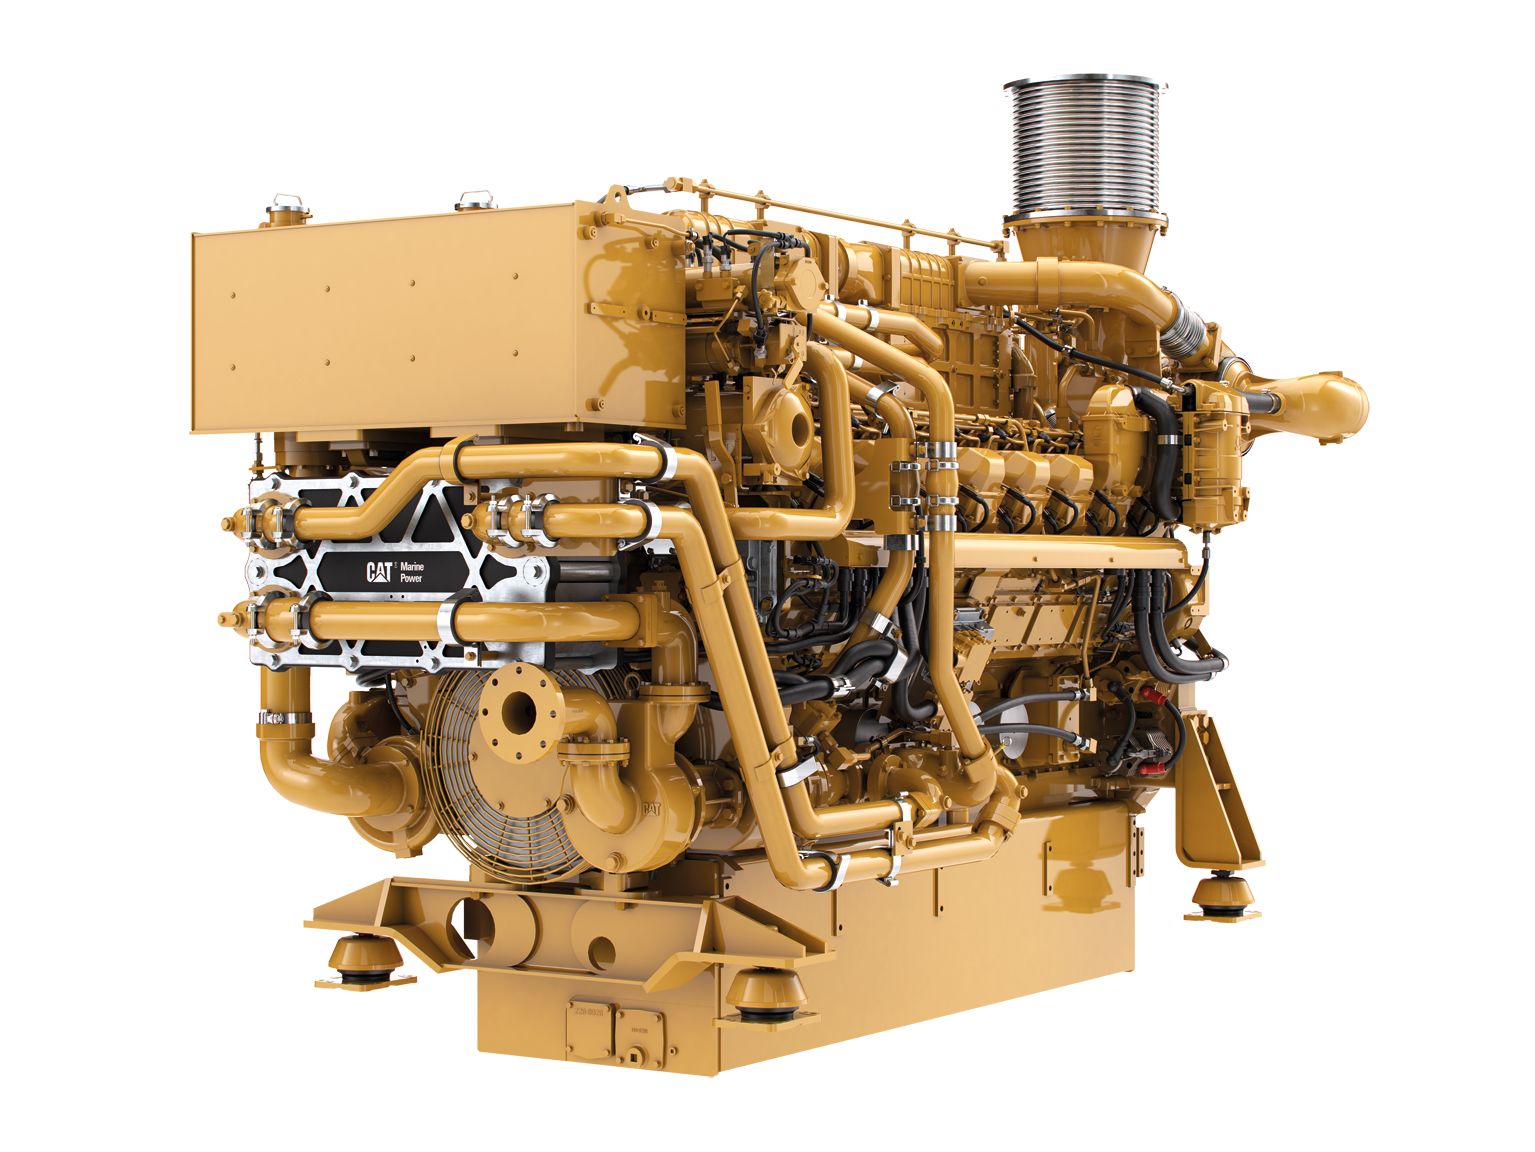 Motore di propulsione marino 3516E (U.S. EPA Tier 4 Final)